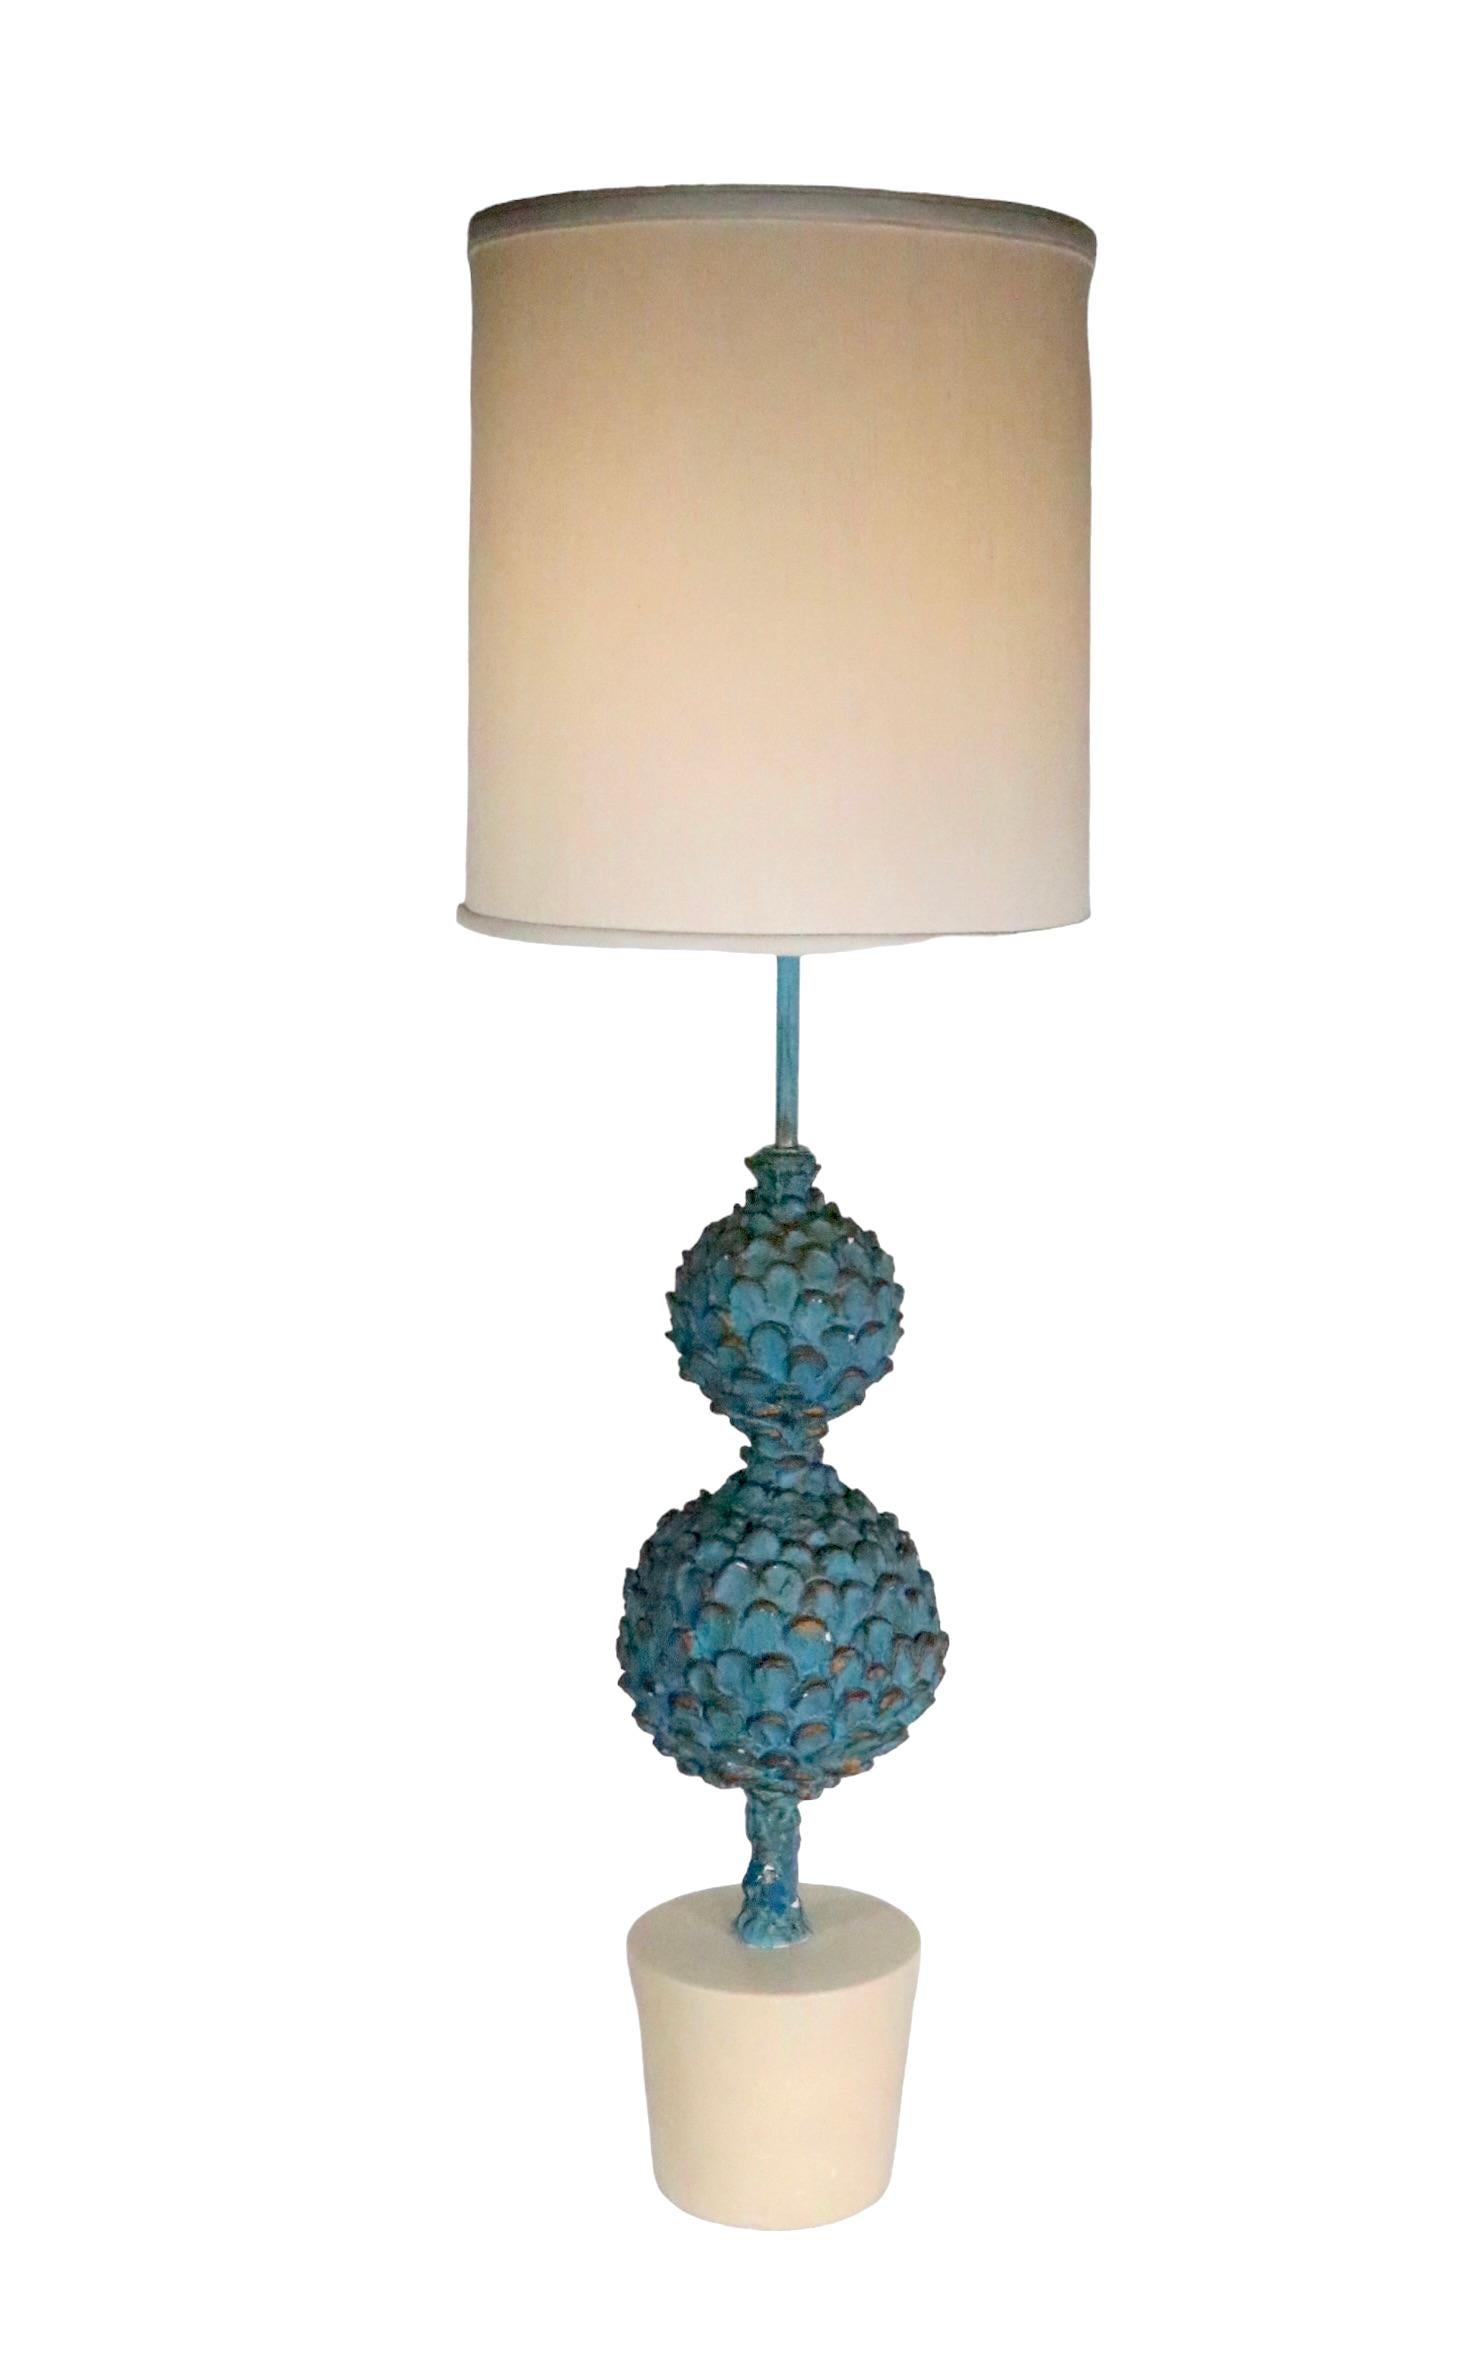 Large Decorative  Artichoke Plant Form Table Lamp  For Sale 7